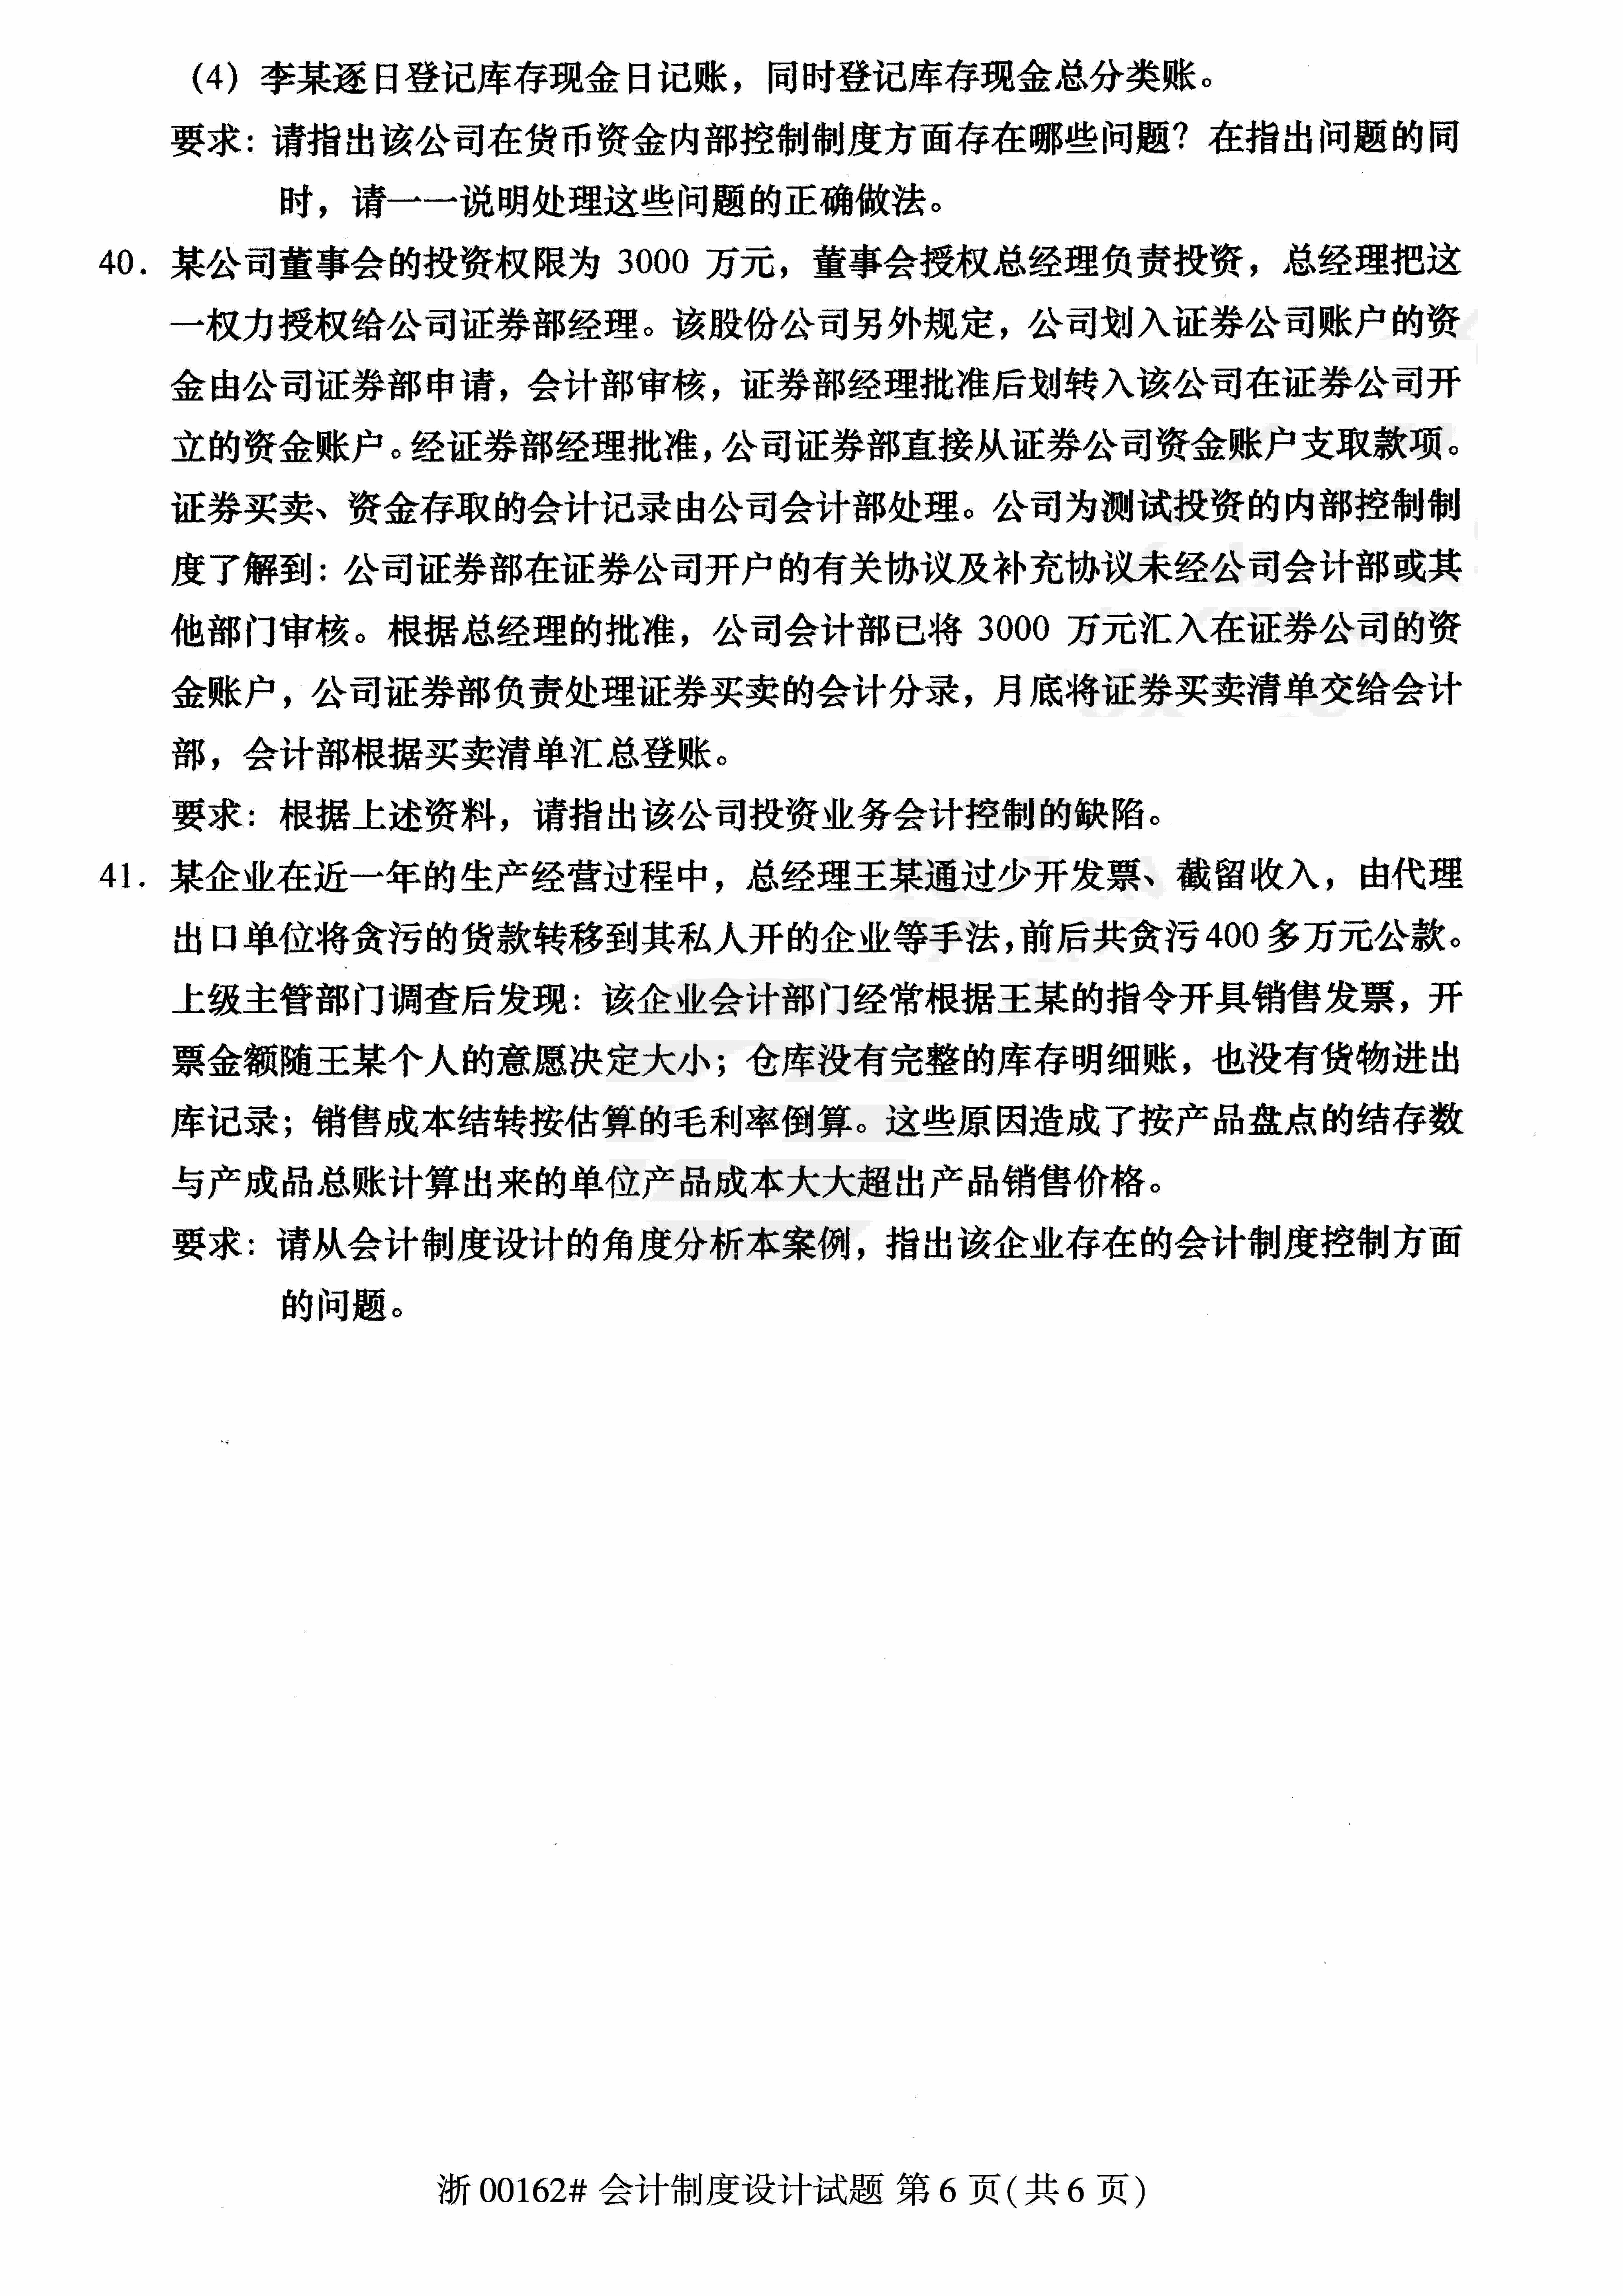 2018年10月贵州省自学考试00162《会计制度设计》真题及答案